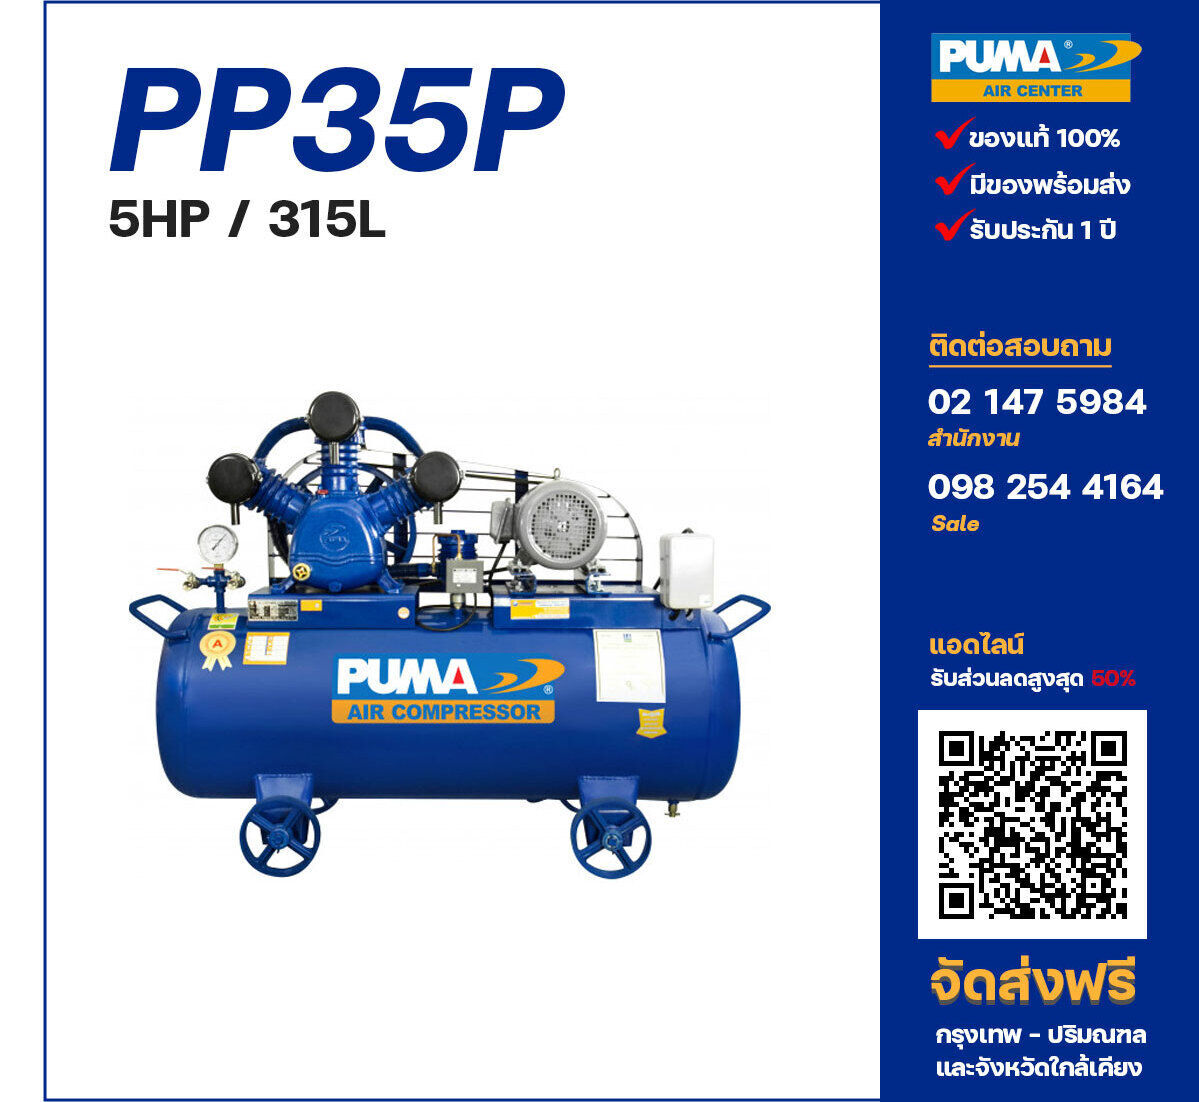 ปั๊มลมพูม่า PUMA PP35P-PPM220V/380V ปั๊มลมลูกสูบ ขนาด 3 สูบ 5 แรงม้า 315 ลิตร PUMA พร้อมมอเตอร์ PUMA ไฟ 220V/380V ส่งฟรี กรุงเทพฯ-ปริมณฑล รับประกัน 1 ปี
